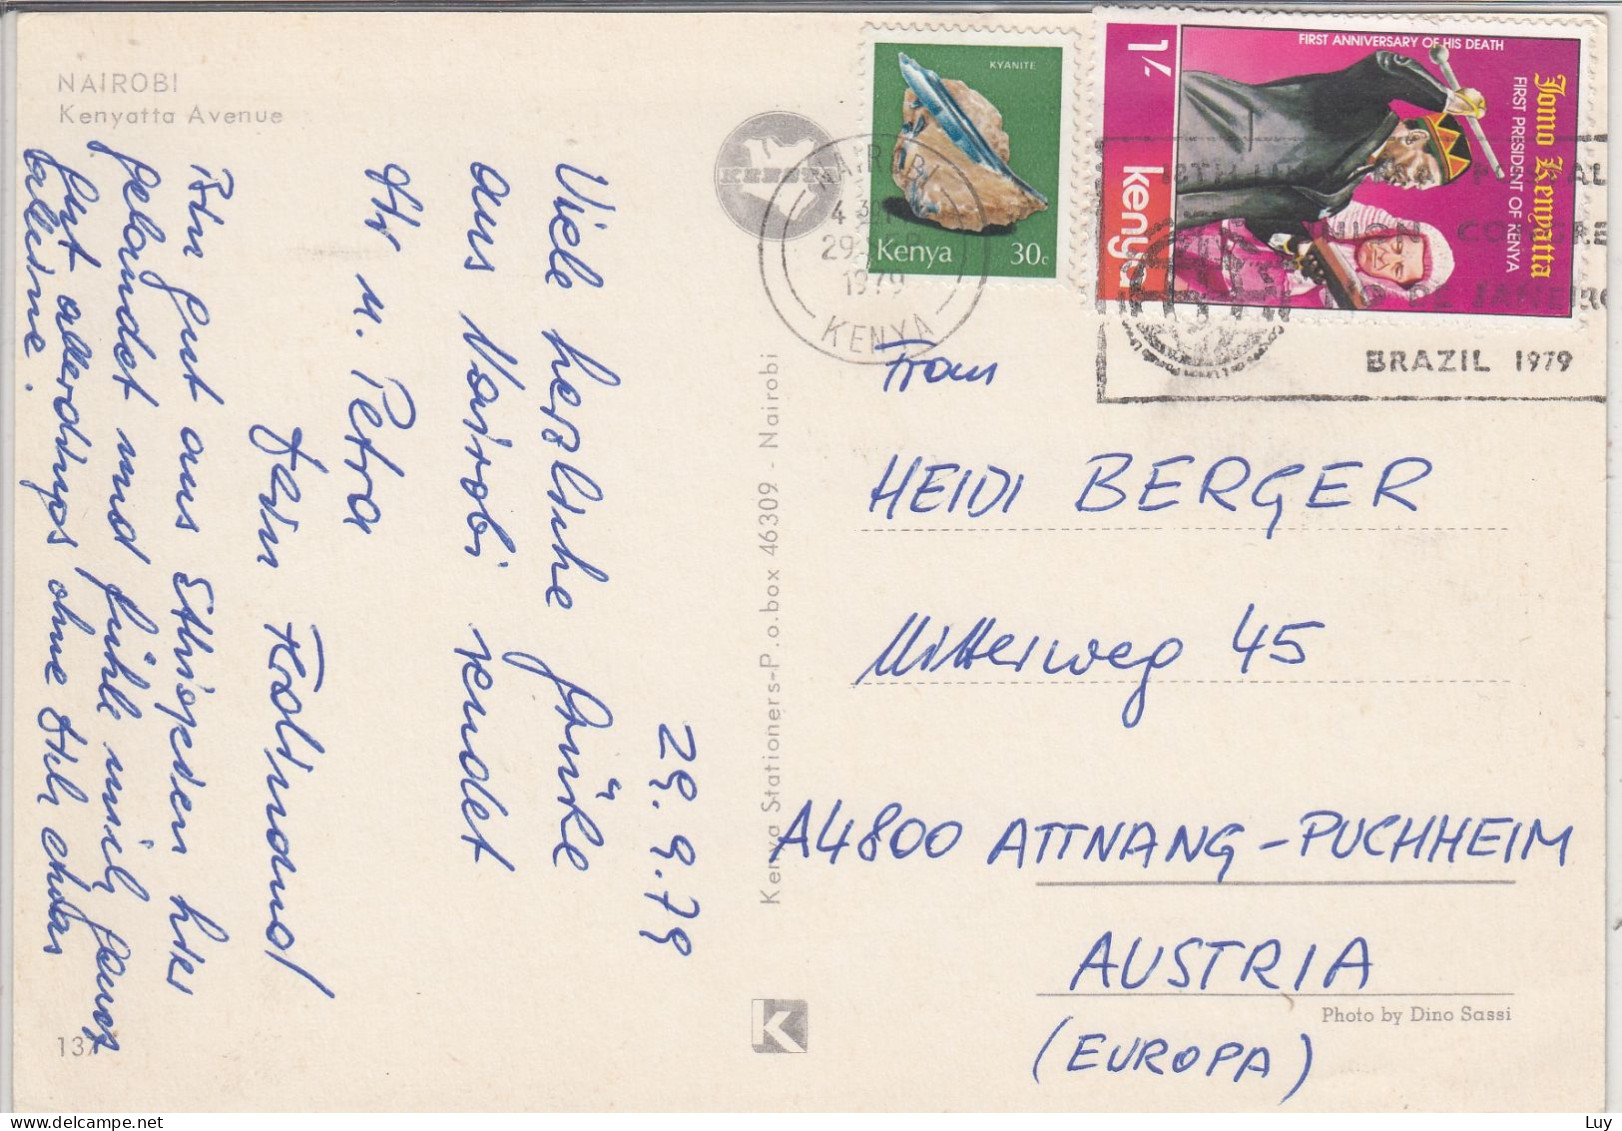 Kenya - NAIROBI,  Kenyatta Avenue,   Used 1979, Nice Stamp - Kenya